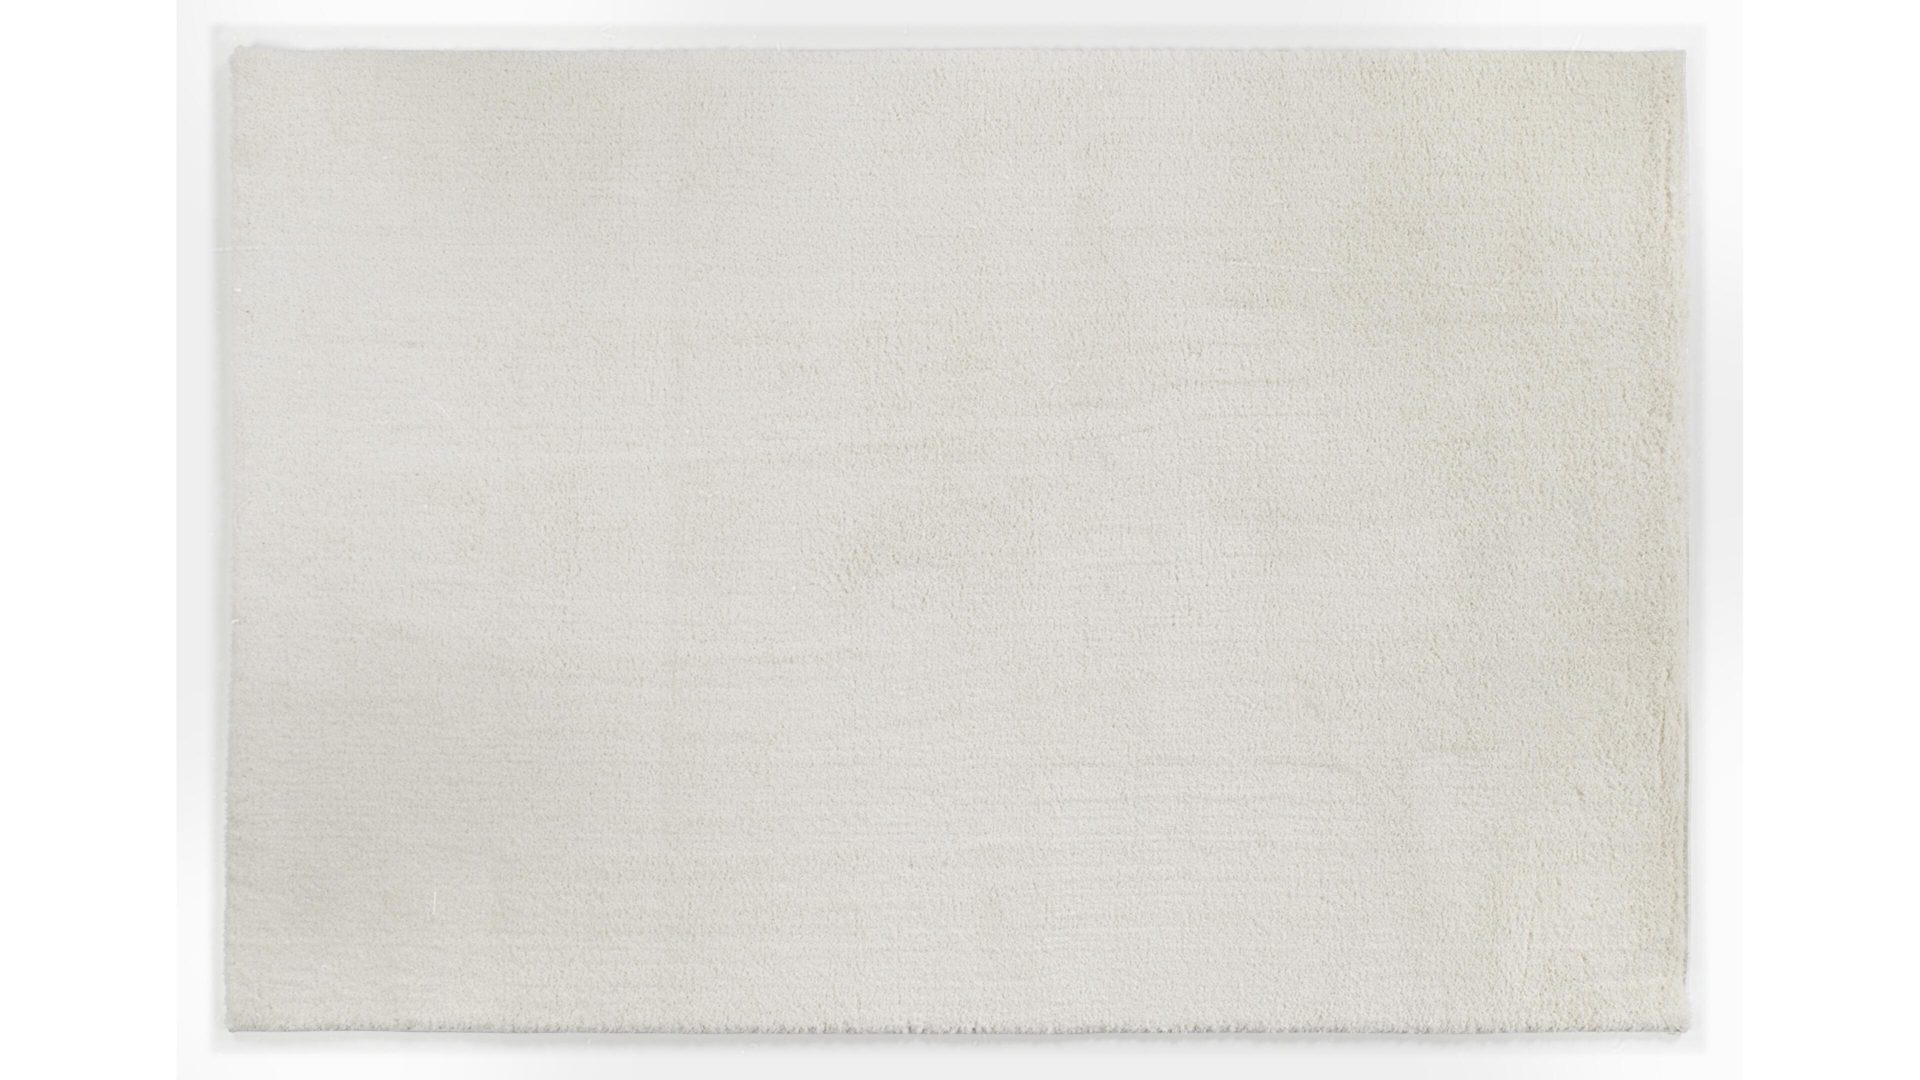 Hochflorteppich Oci aus Kunstfaser in Weiß Hochflorteppich Soft Dream für Ihre Wohnaccessoires cremefarbene Kunstfaser – ca. 65 x 130 cm